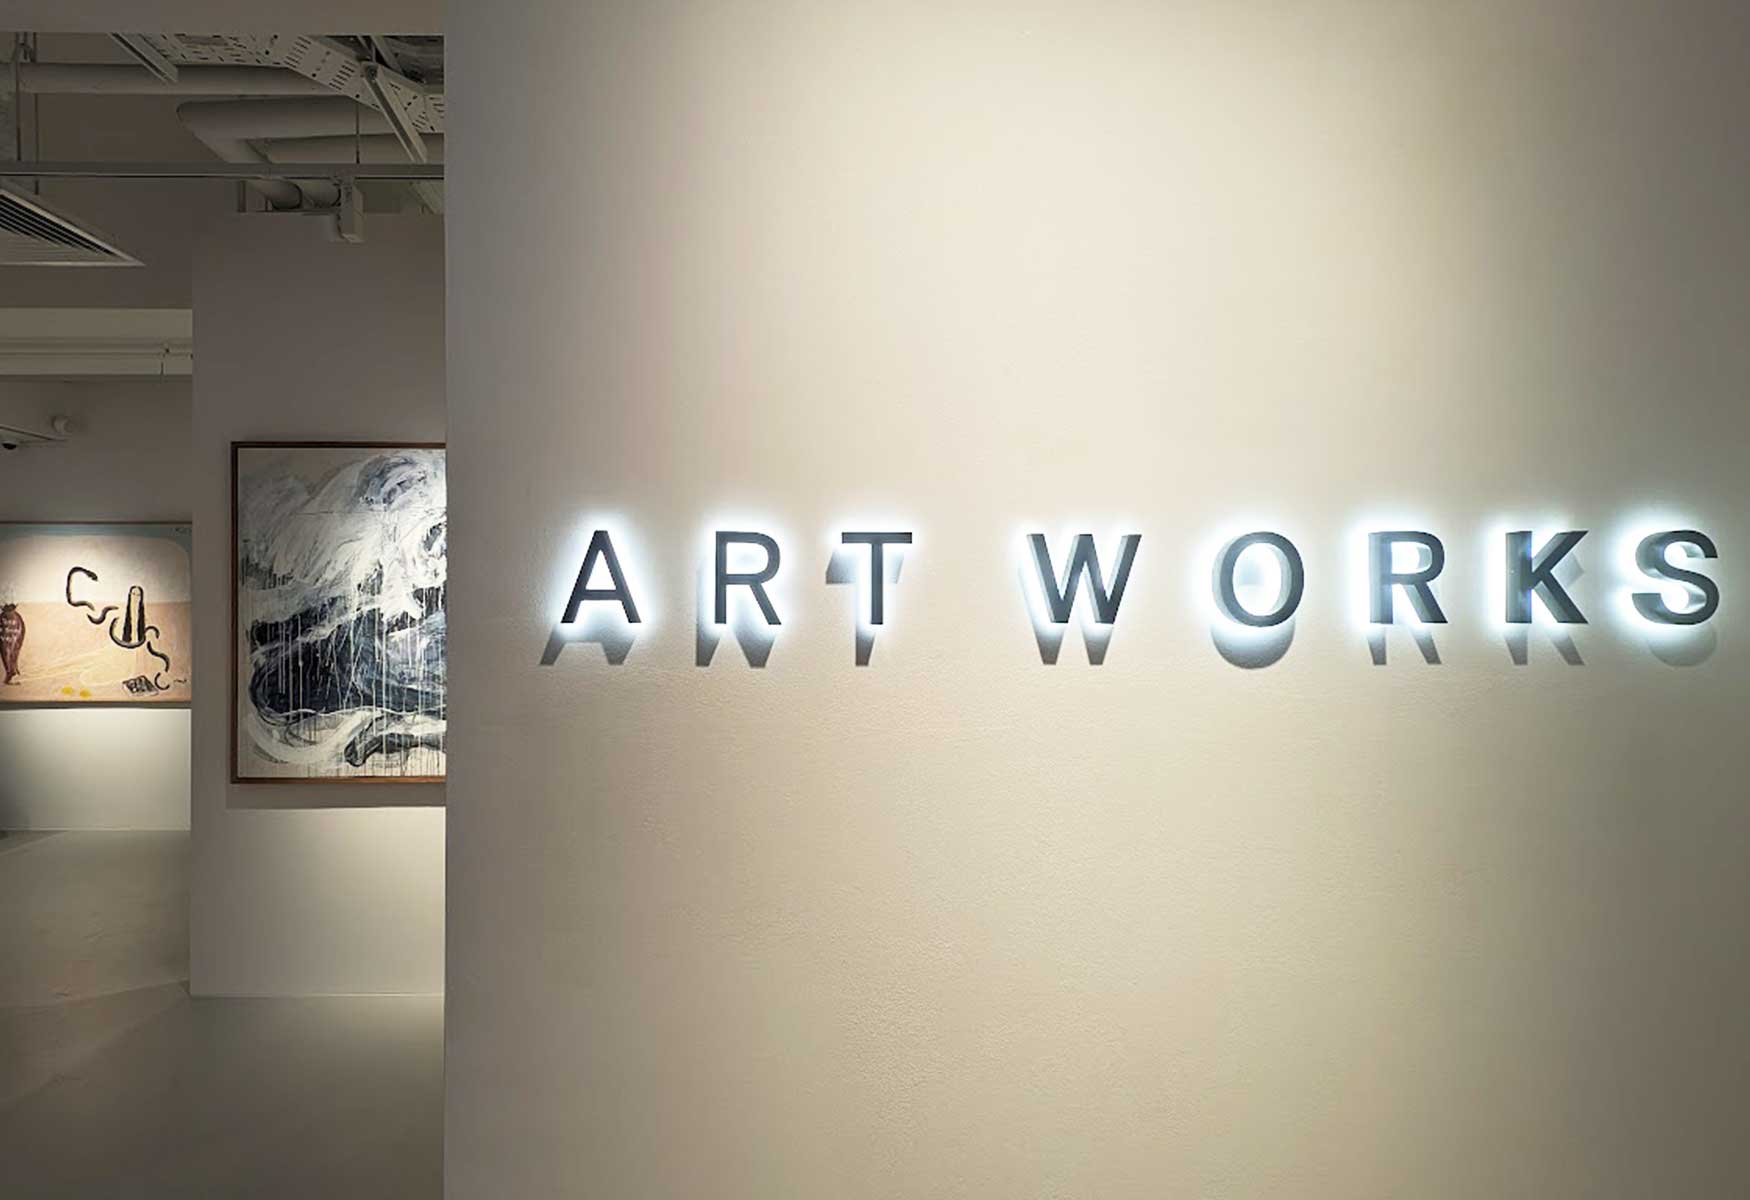 Art Works Gallery